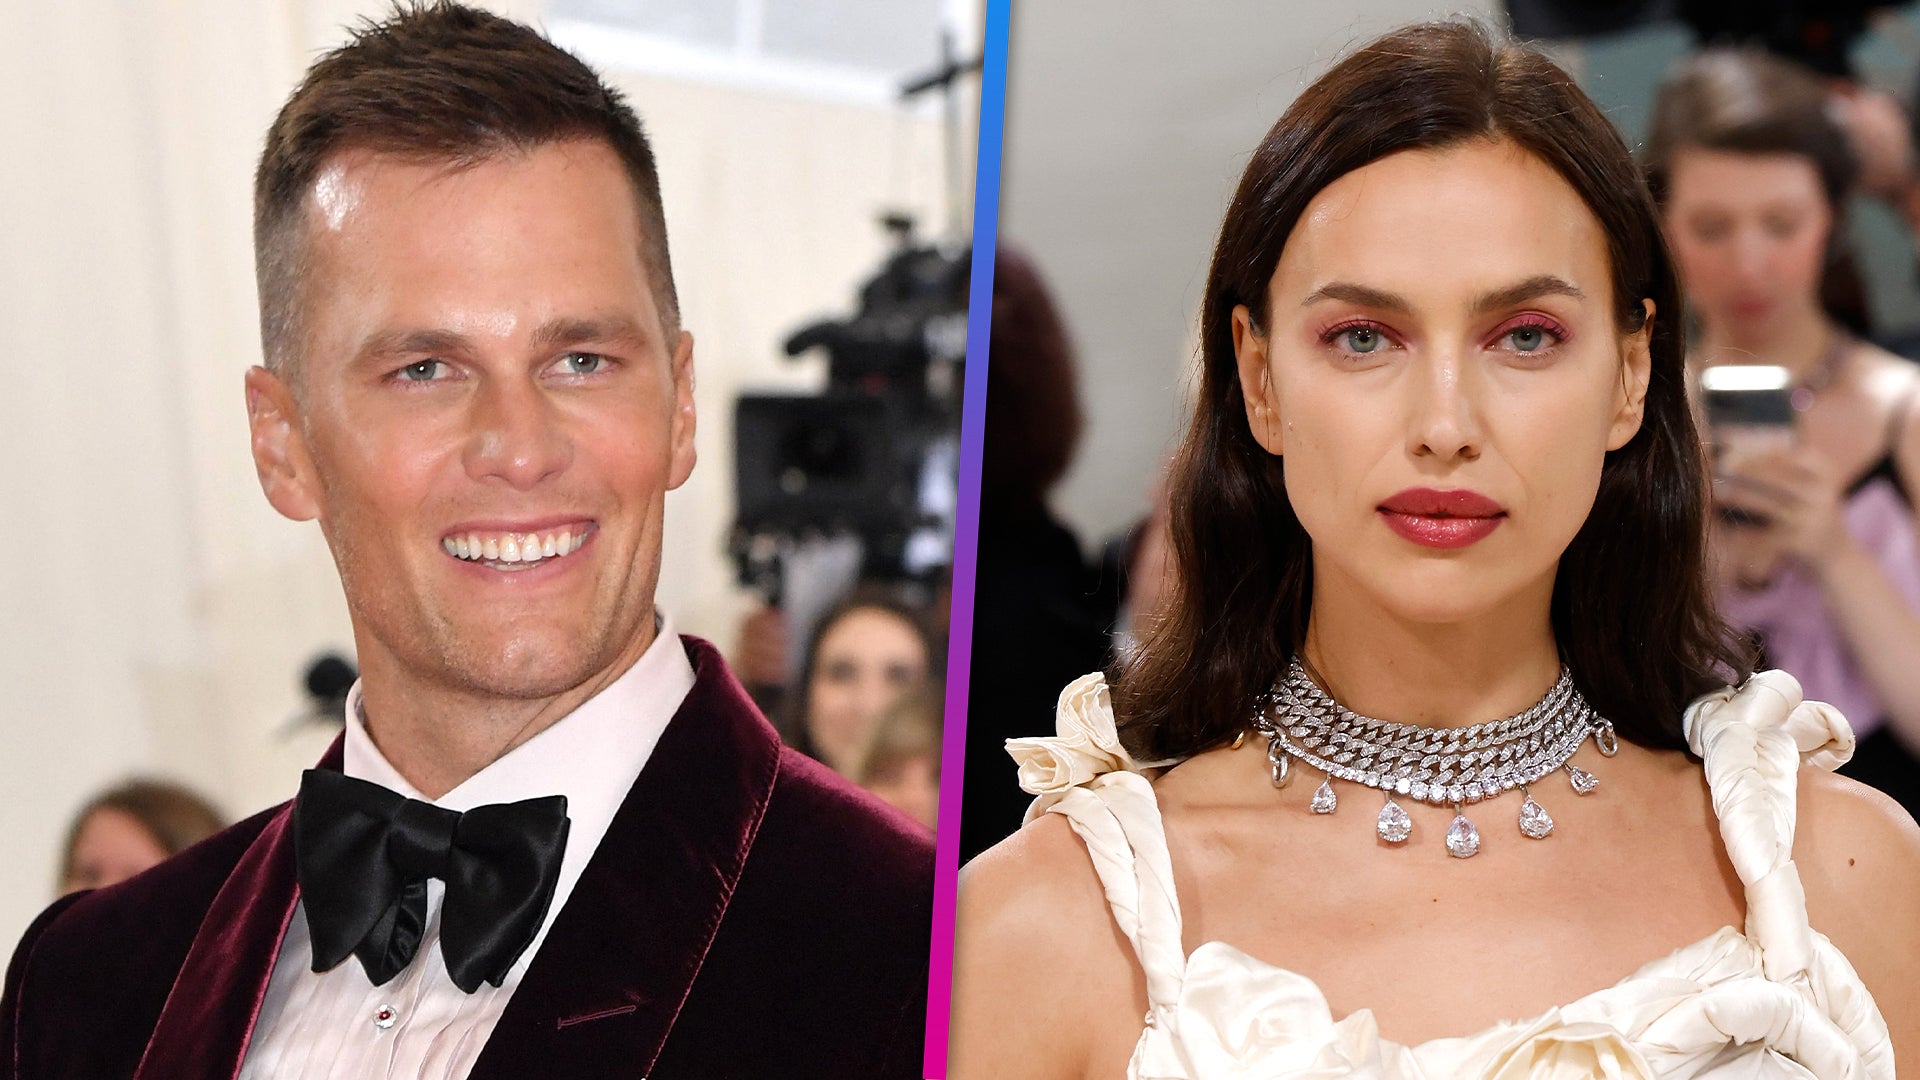 Are Tom Brady and Irina Shayk dating? New pics spark rumors - Los